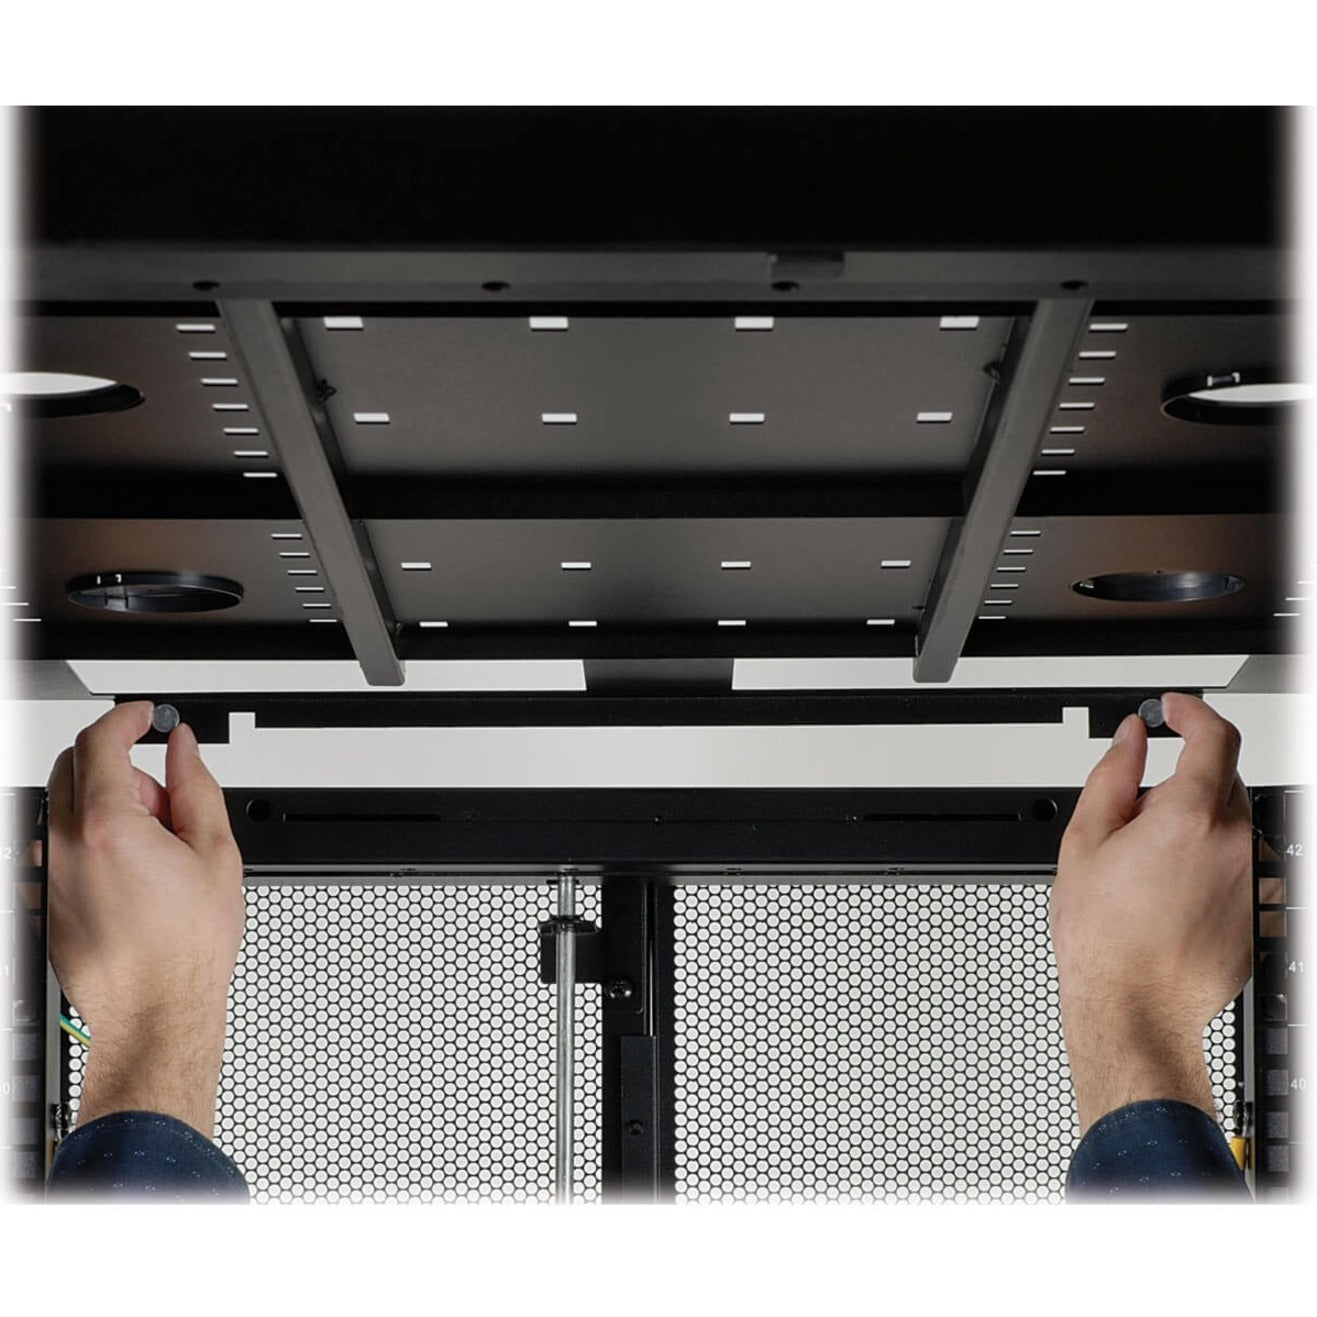 Tripp Lite SR52UB SmartRack Premium 52U Standard-Depth Rack Enclosure Cabinet, Removable Side Panel, Adjustable Leveling Feet, Casters, Lockable Side Panel, Cable Management, Reversible Door